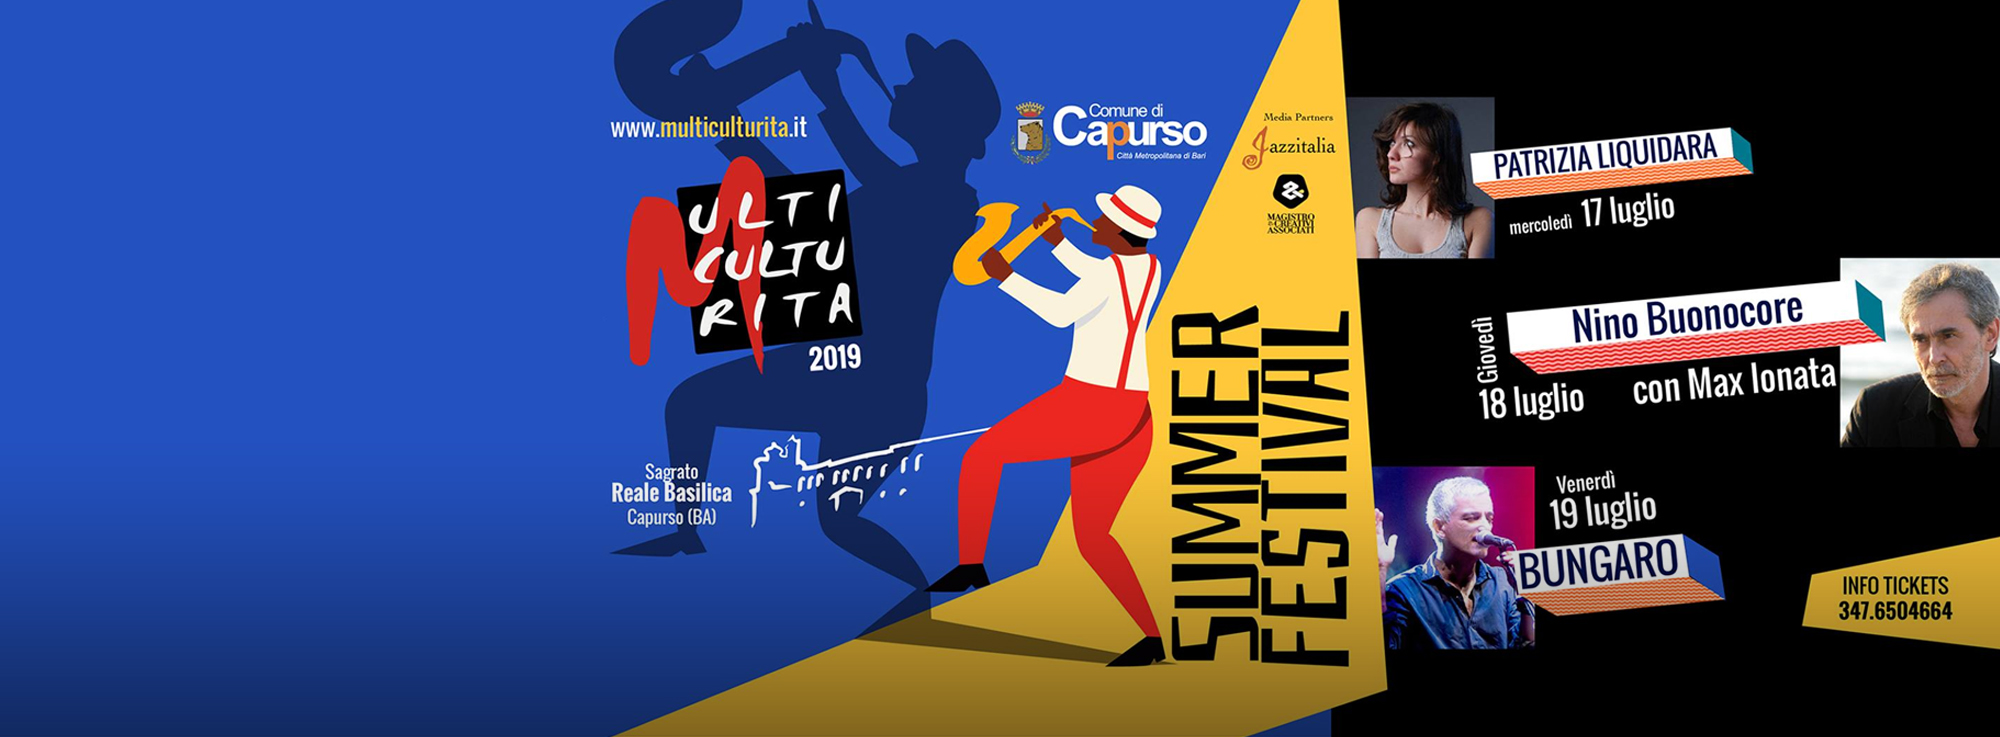 Capurso: Multiculturita Summer Fest